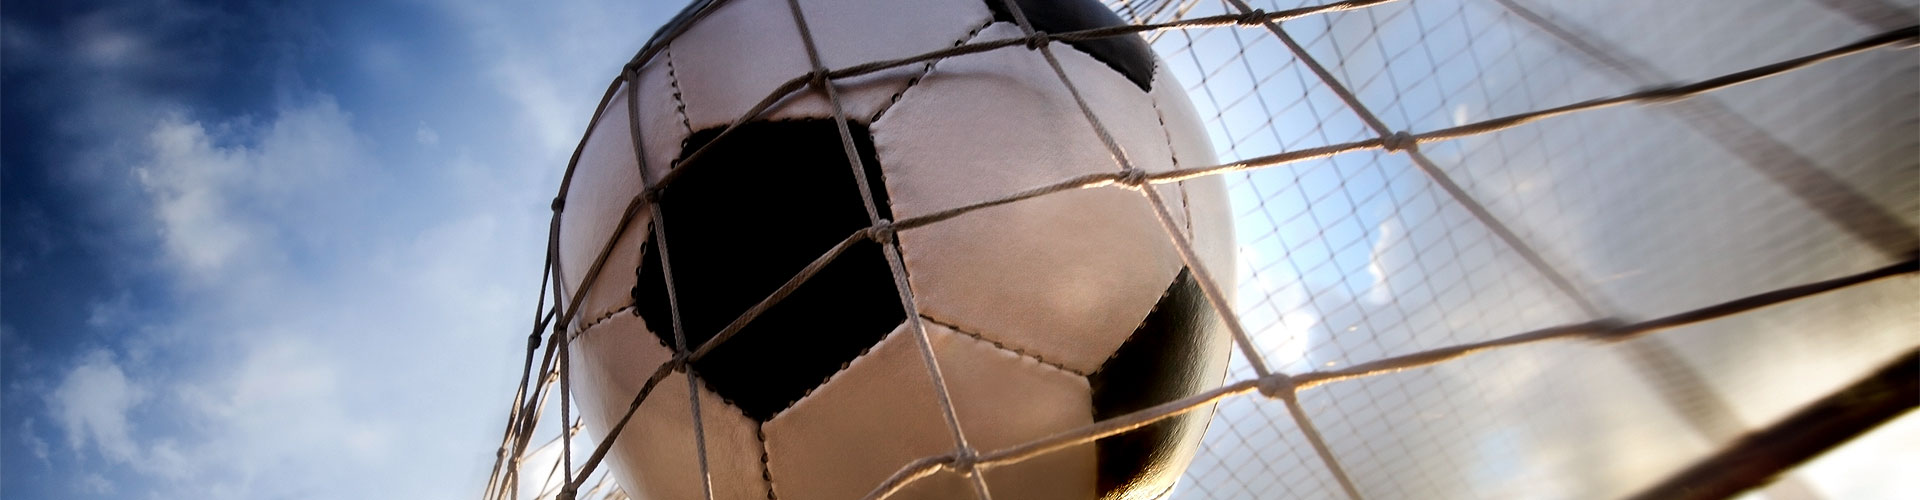 Ver la Eurocopa 2020 de fútbol en vivo en Greixer